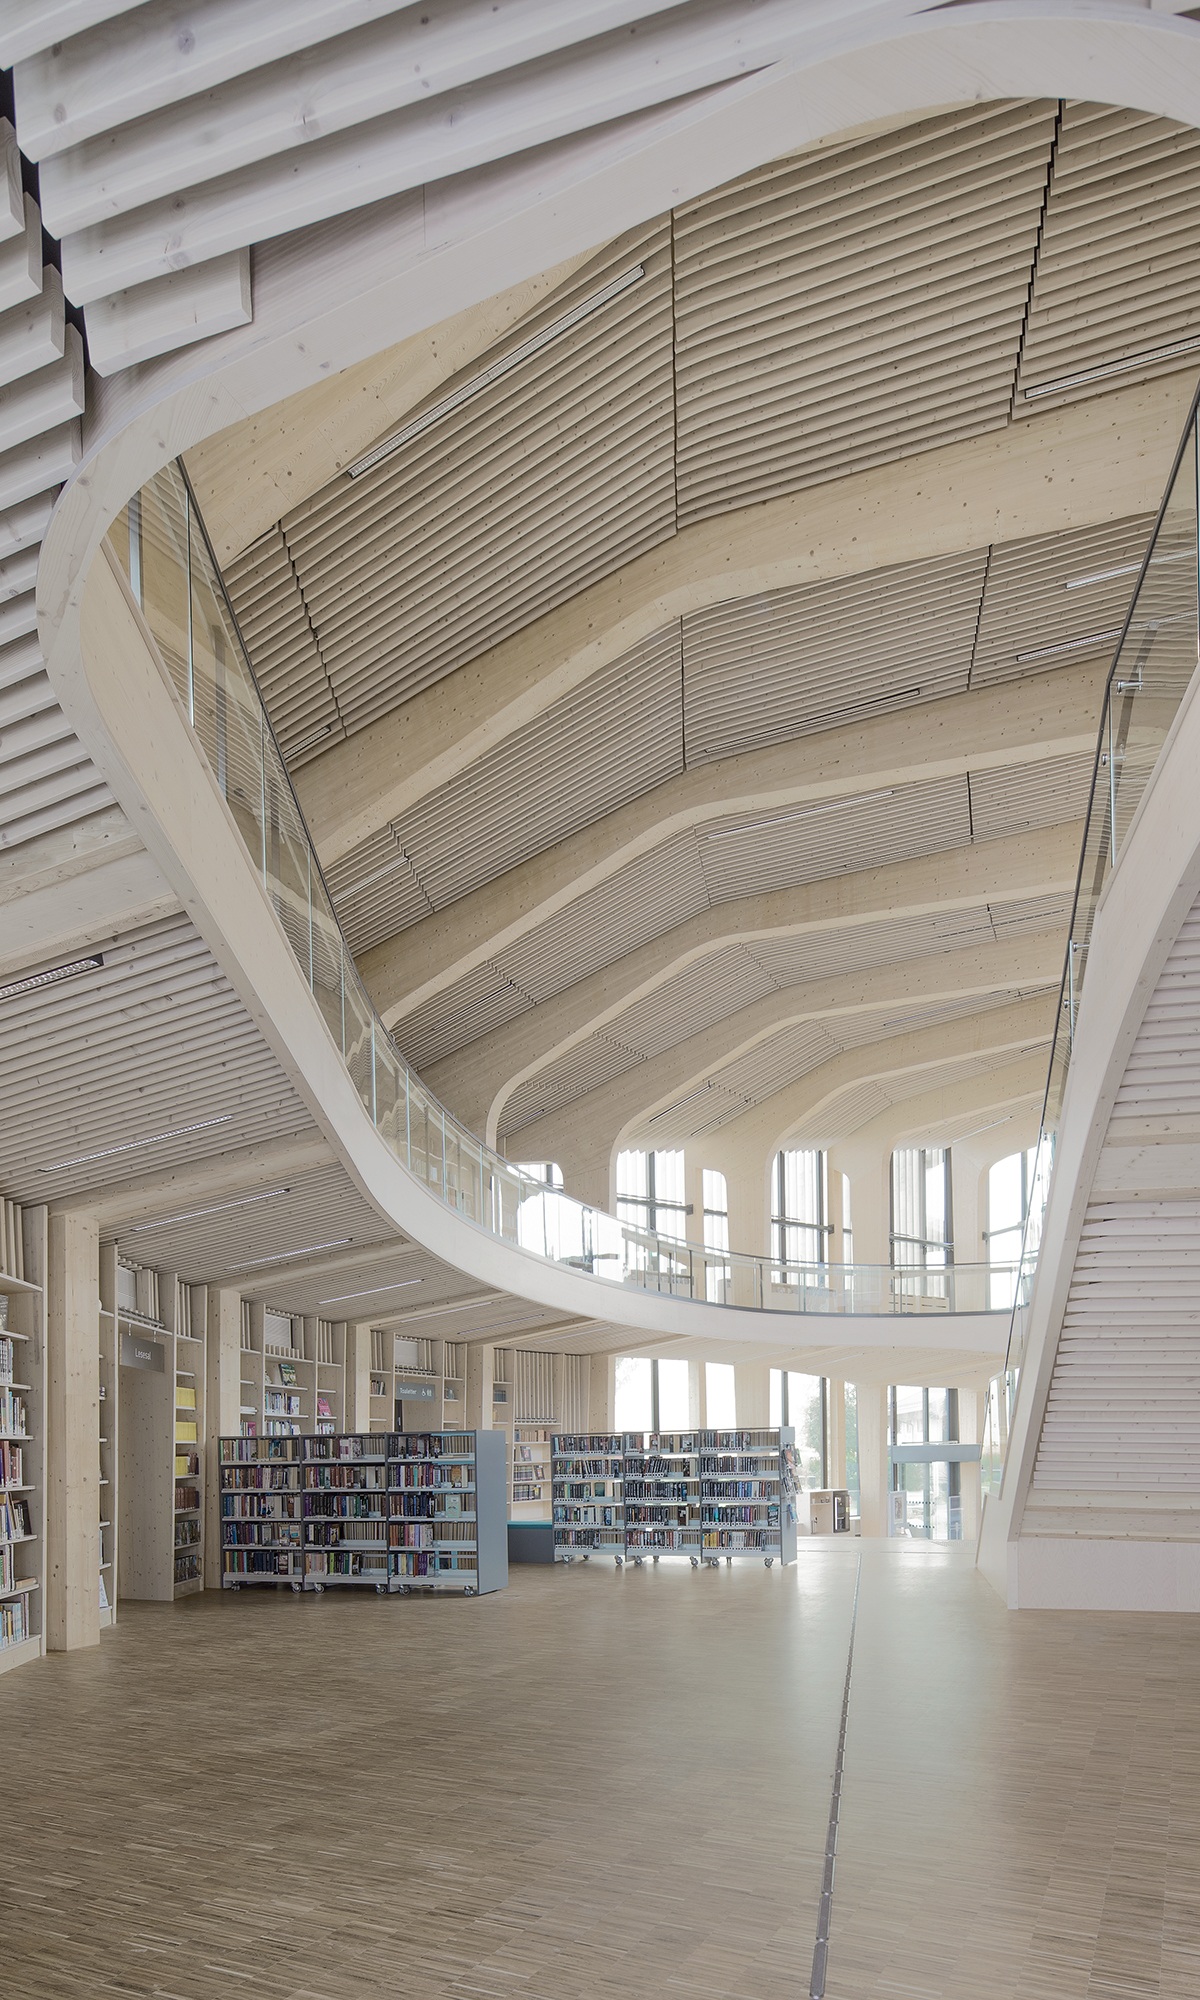 Vue du rez-de-chaussée avec les étagères à livres vers le toit du bâtiment de la bibliothèque avec sa remarquable construction en bois.